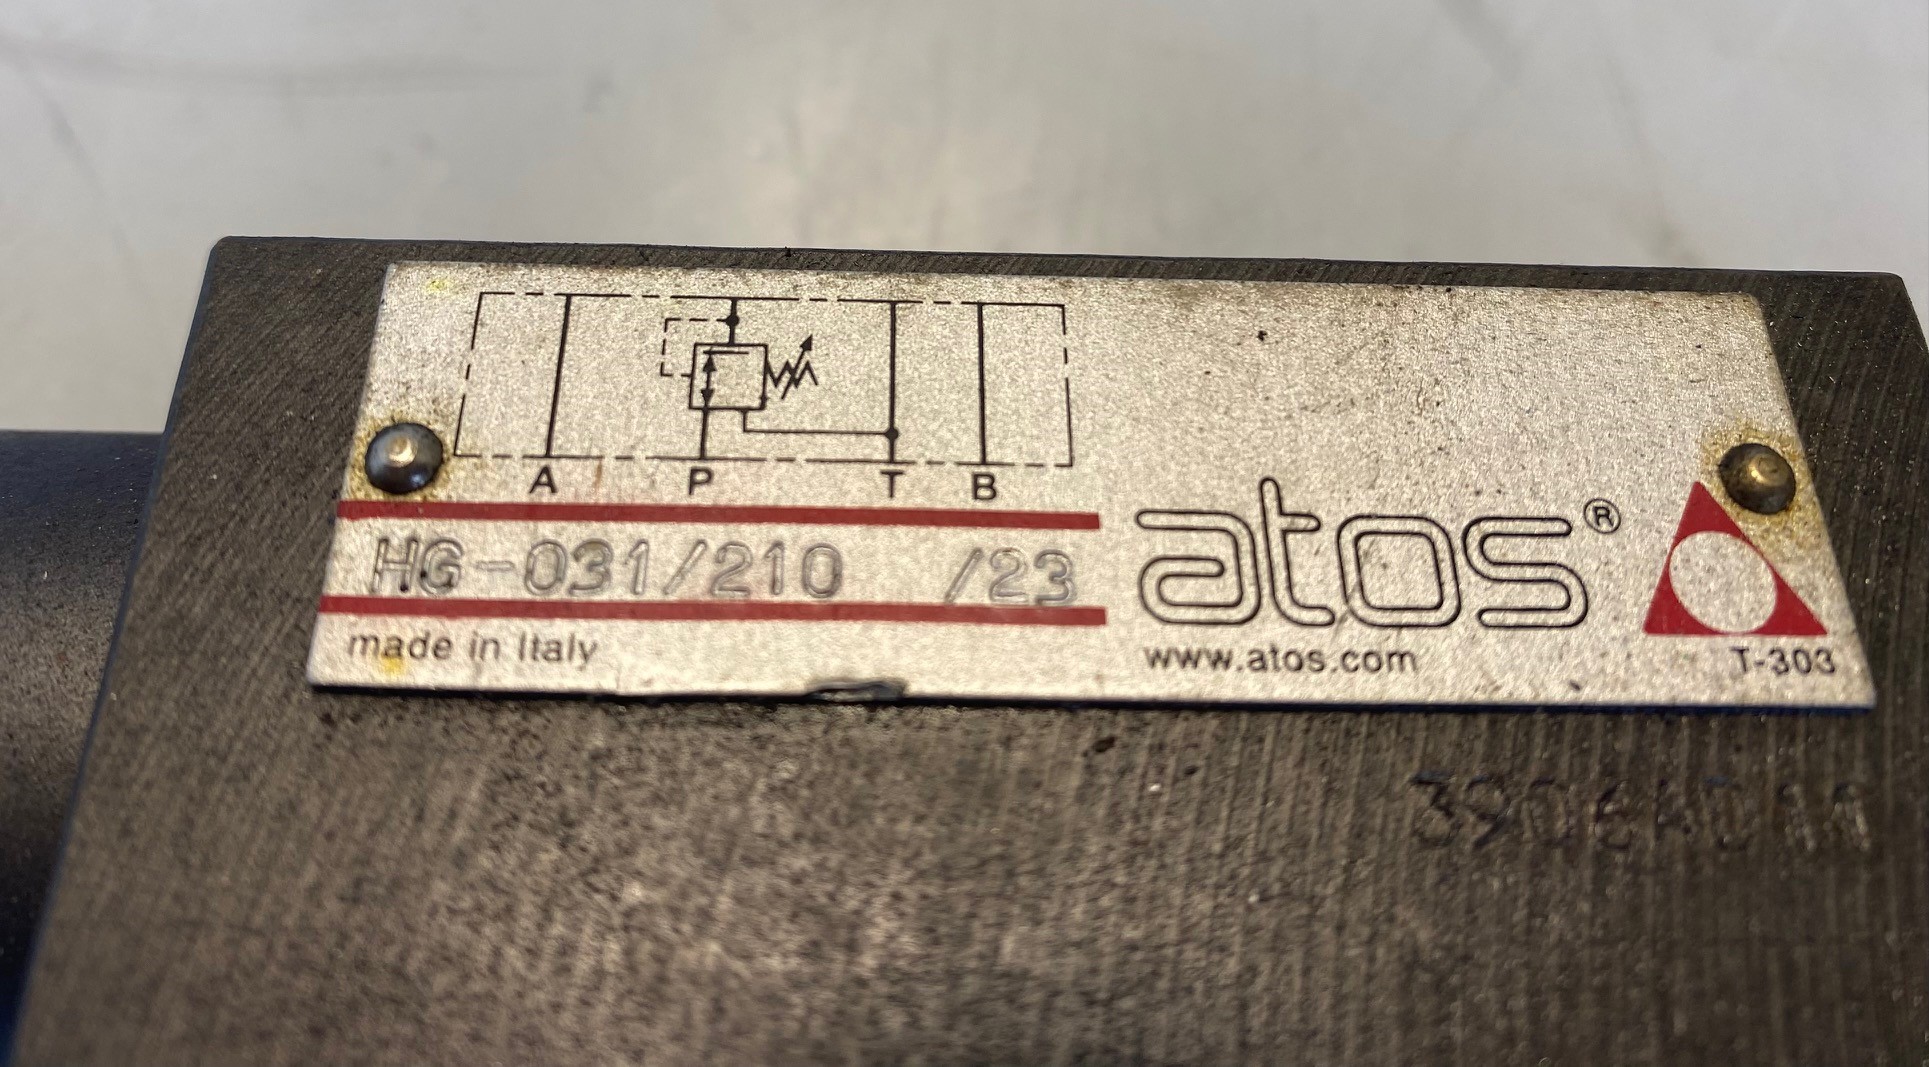 Atos Zwischenplatten-Druckminderventil HG-031/210